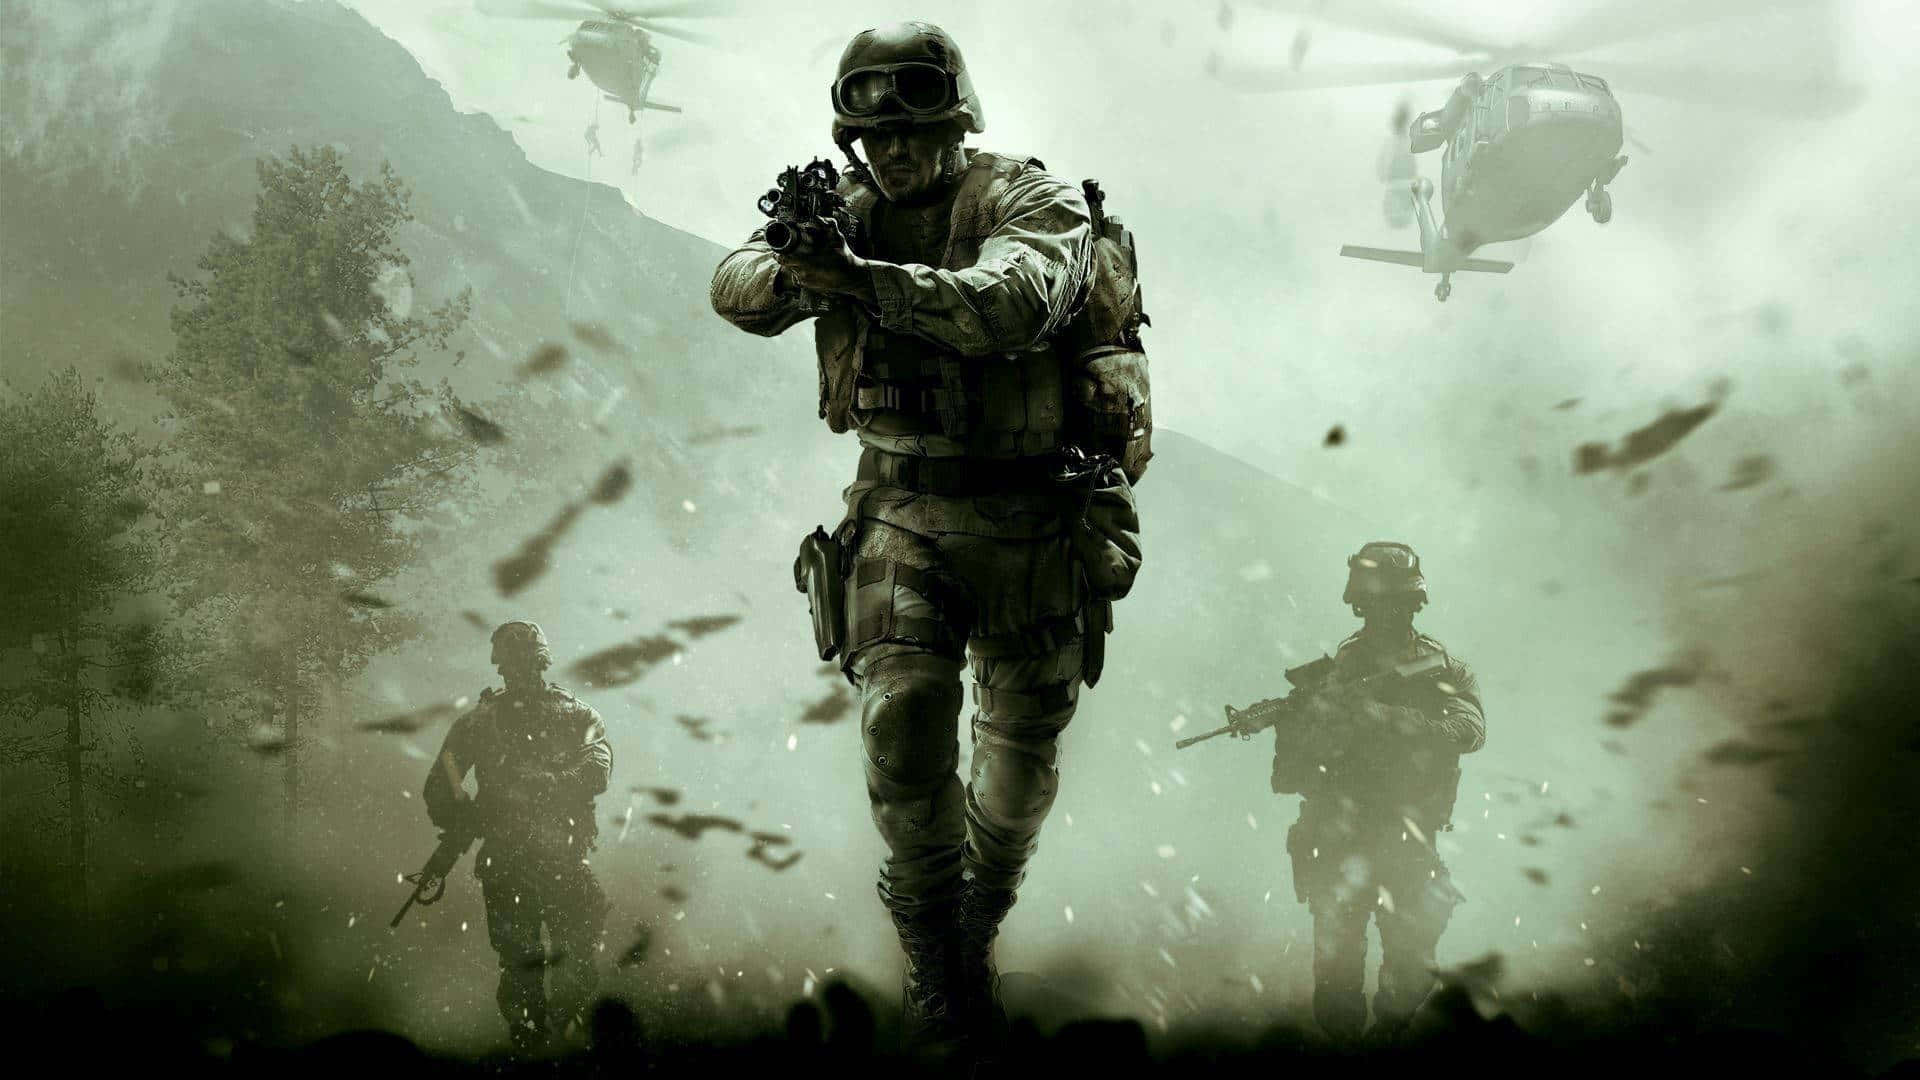 Callof Duty Modern Warfare Baggrund.